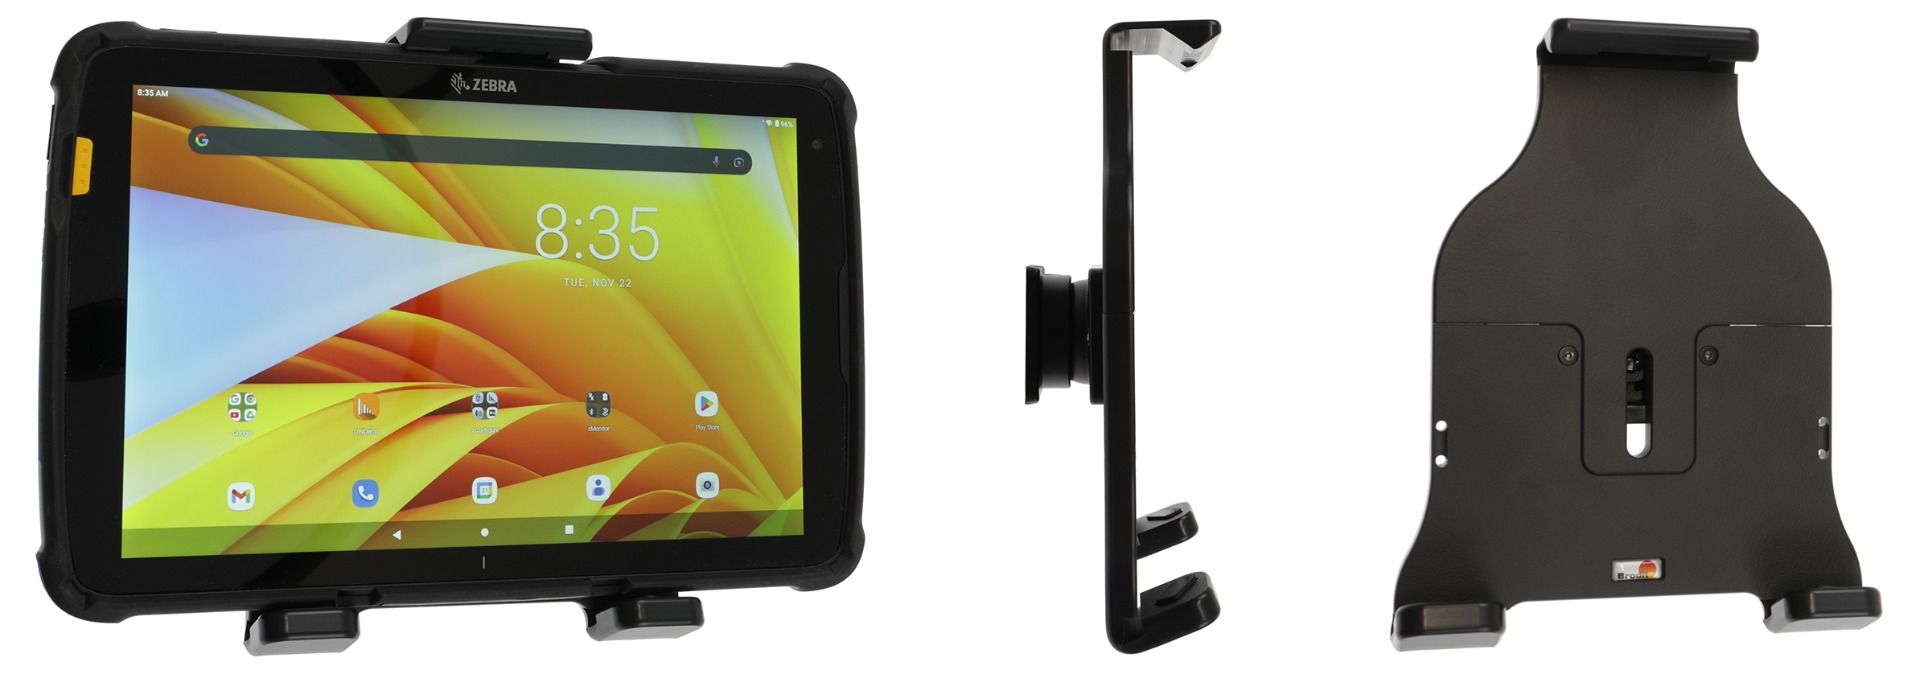 Brodit holder adjustable Tablet 160-185mm/ 10-17mm